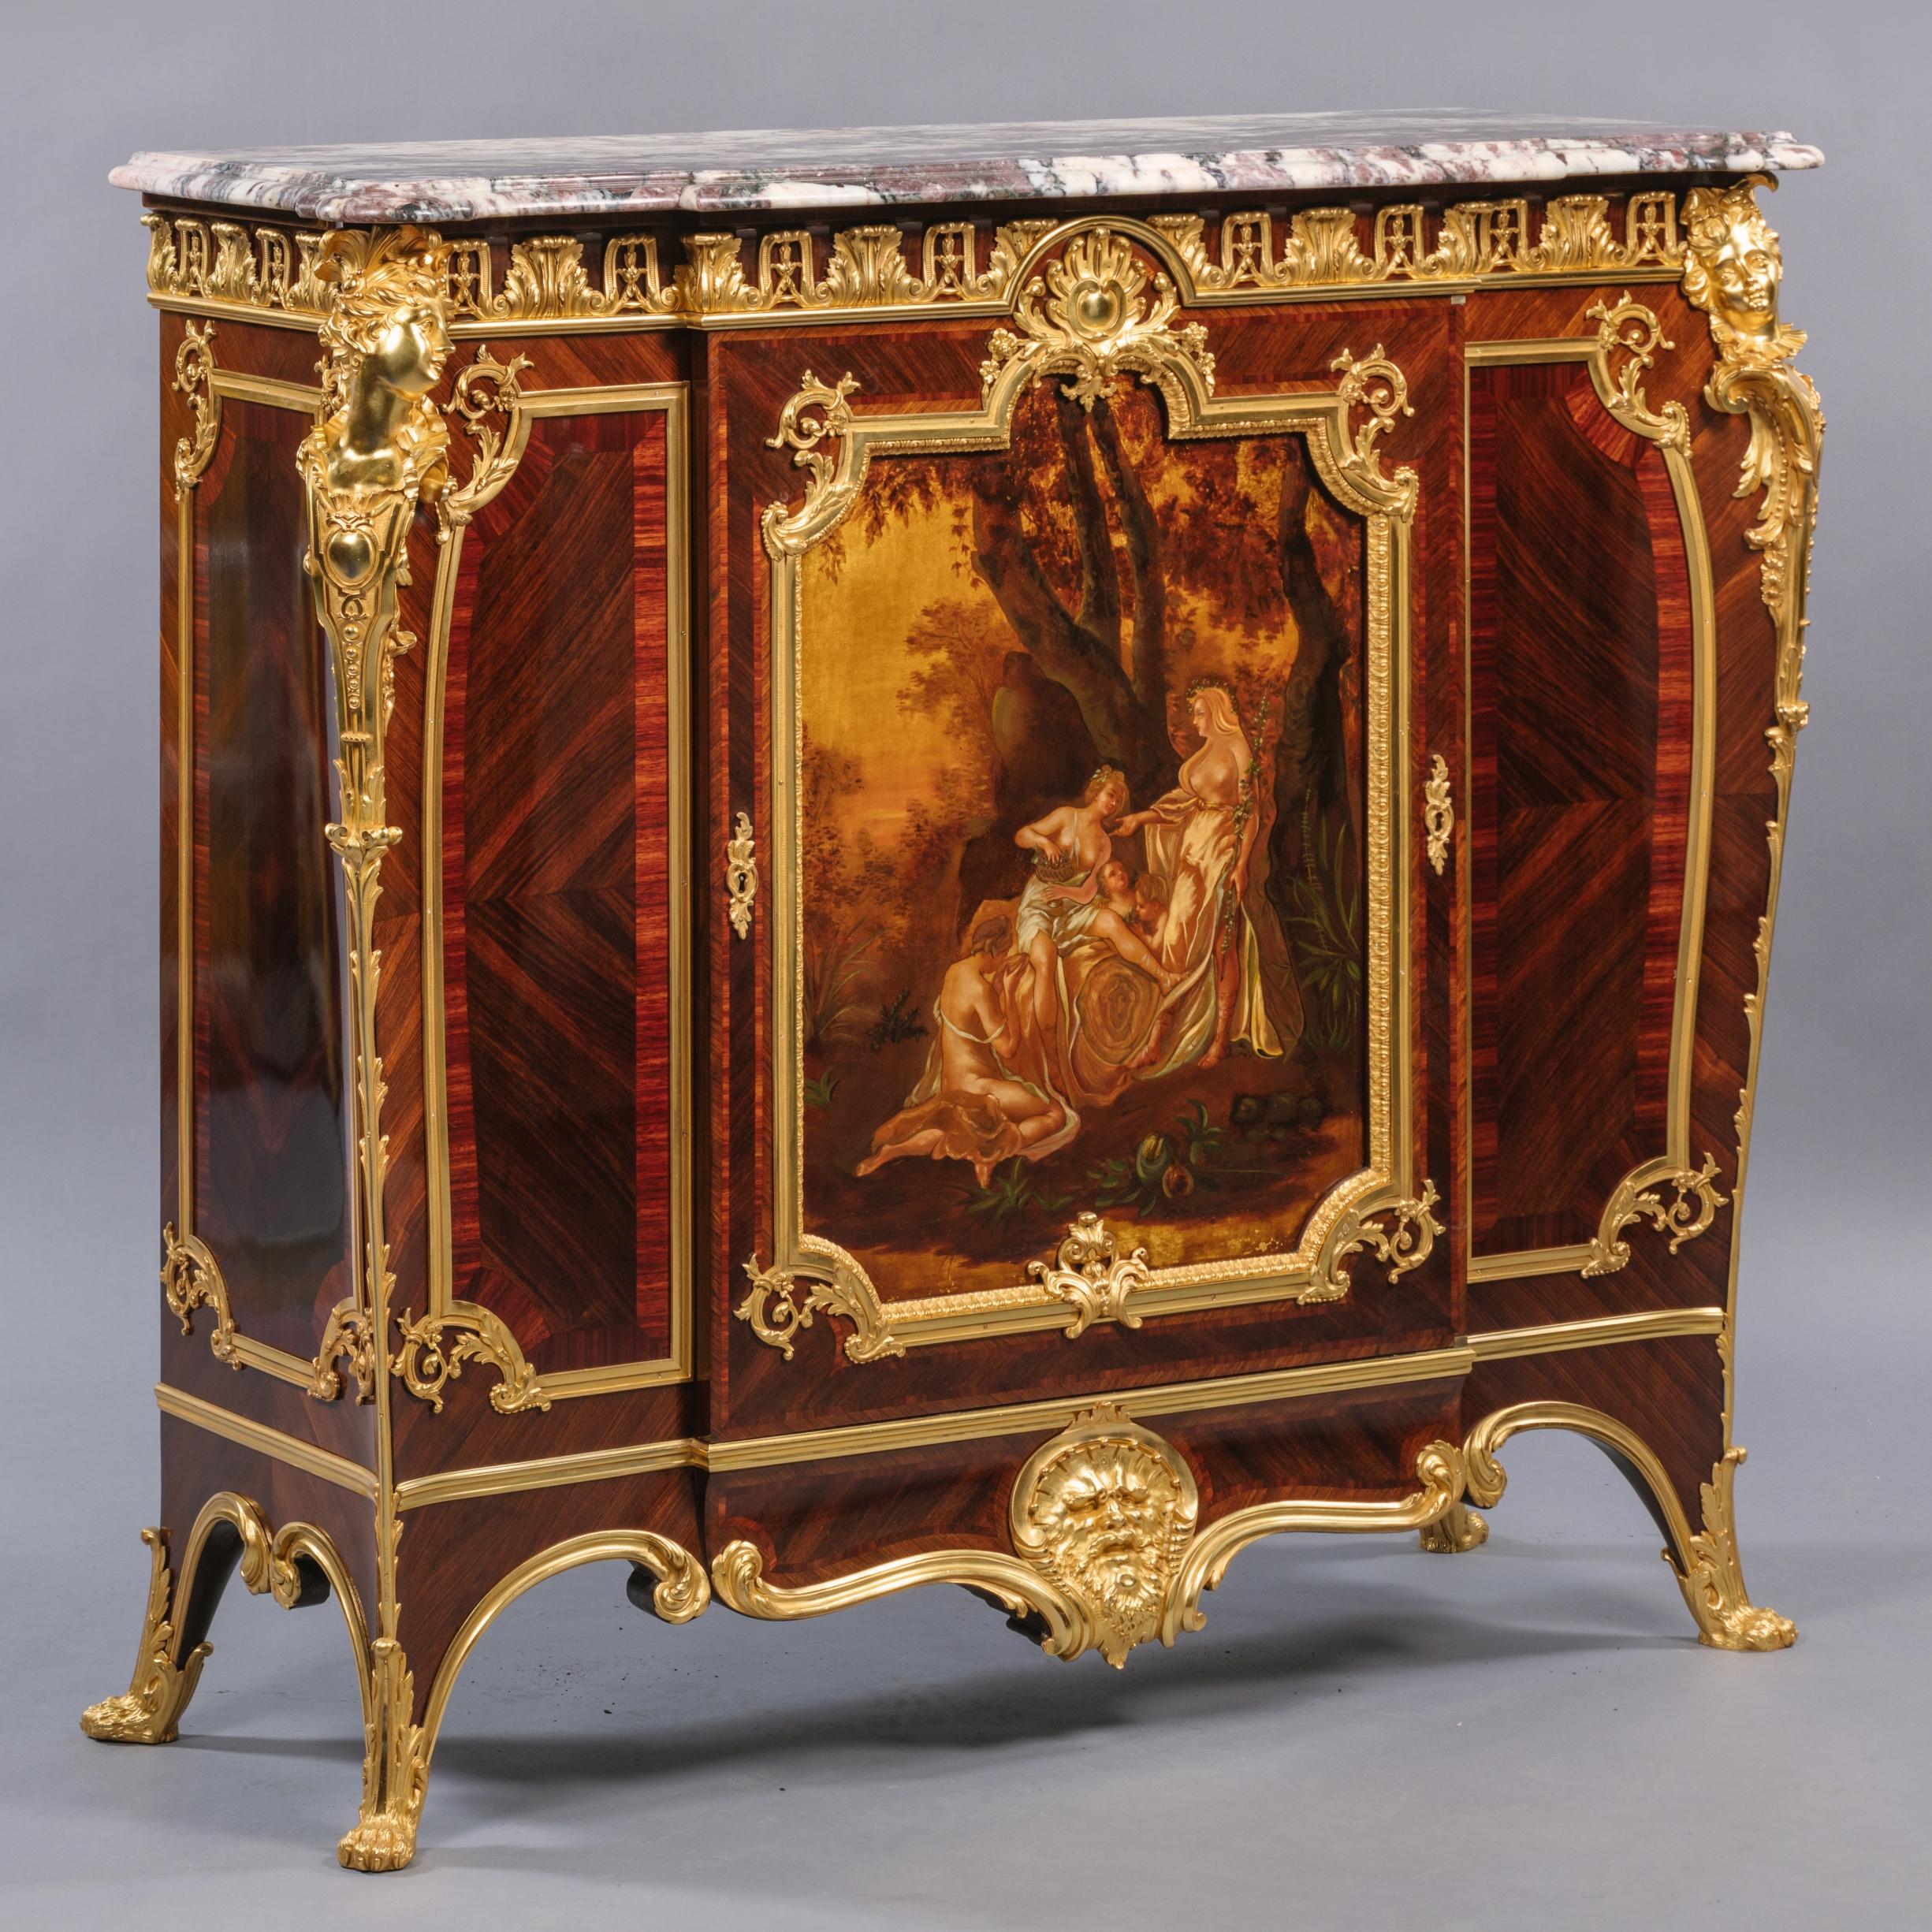 Un beau meuble d'appoint monté en bronze doré Vernis Martin, avec un plateau en marbre, par Joseph-Emmanuel Zwiener. 

Estampillé sur la carcasse, sous le plateau de marbre, 